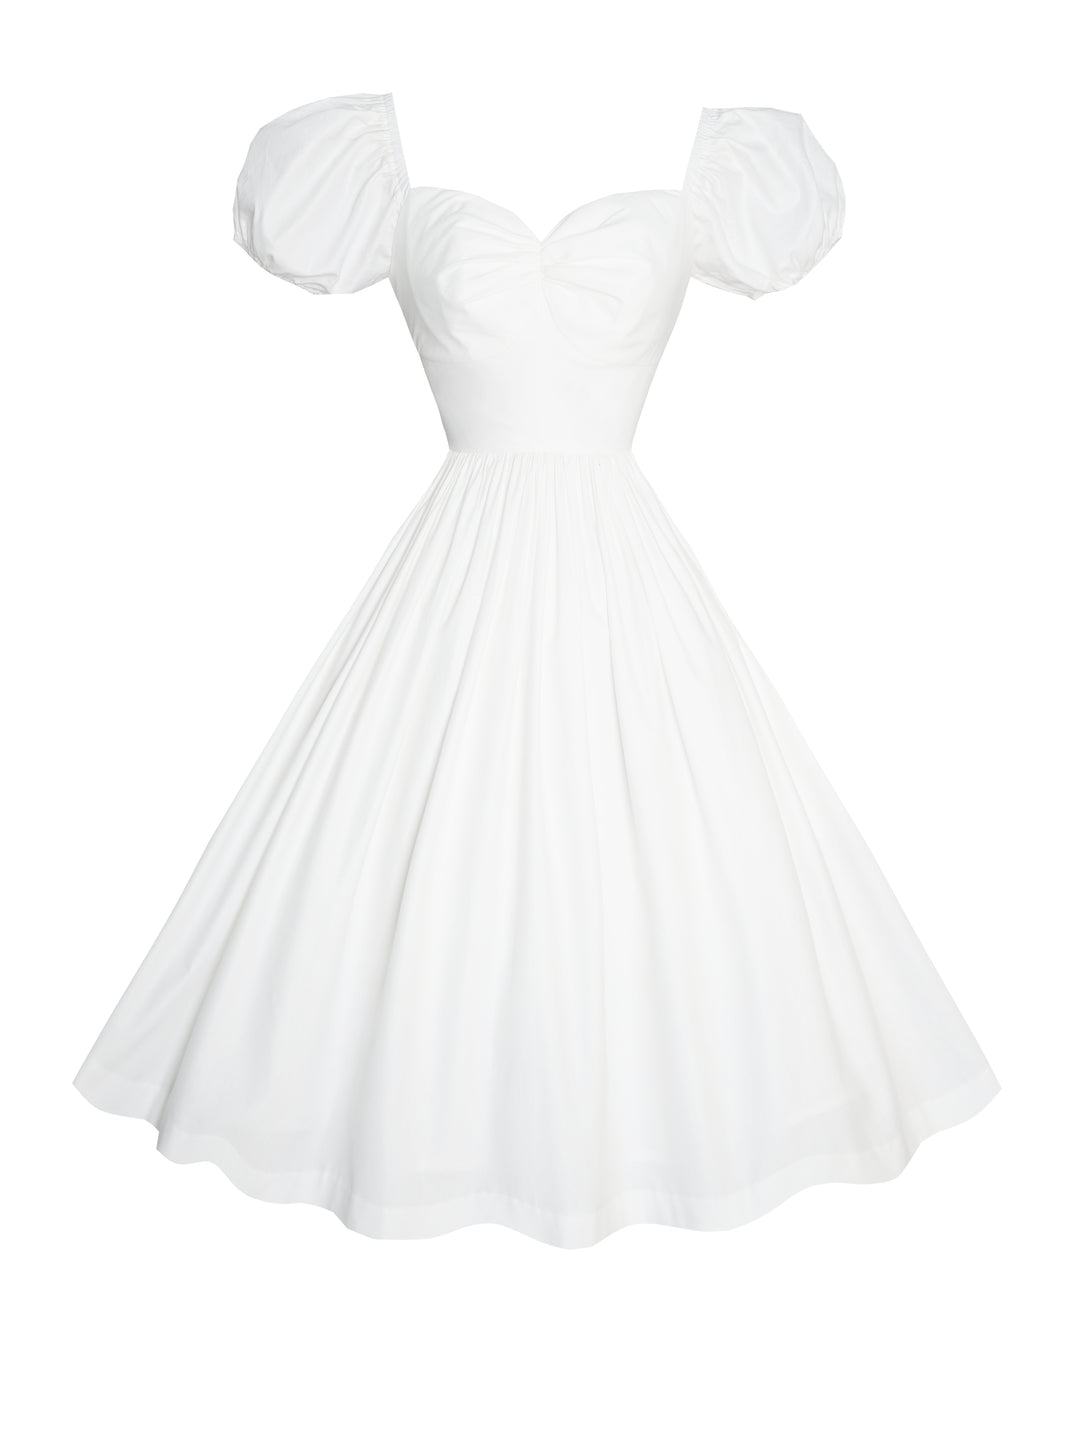 MTO - Valentina Dress in White Cotton